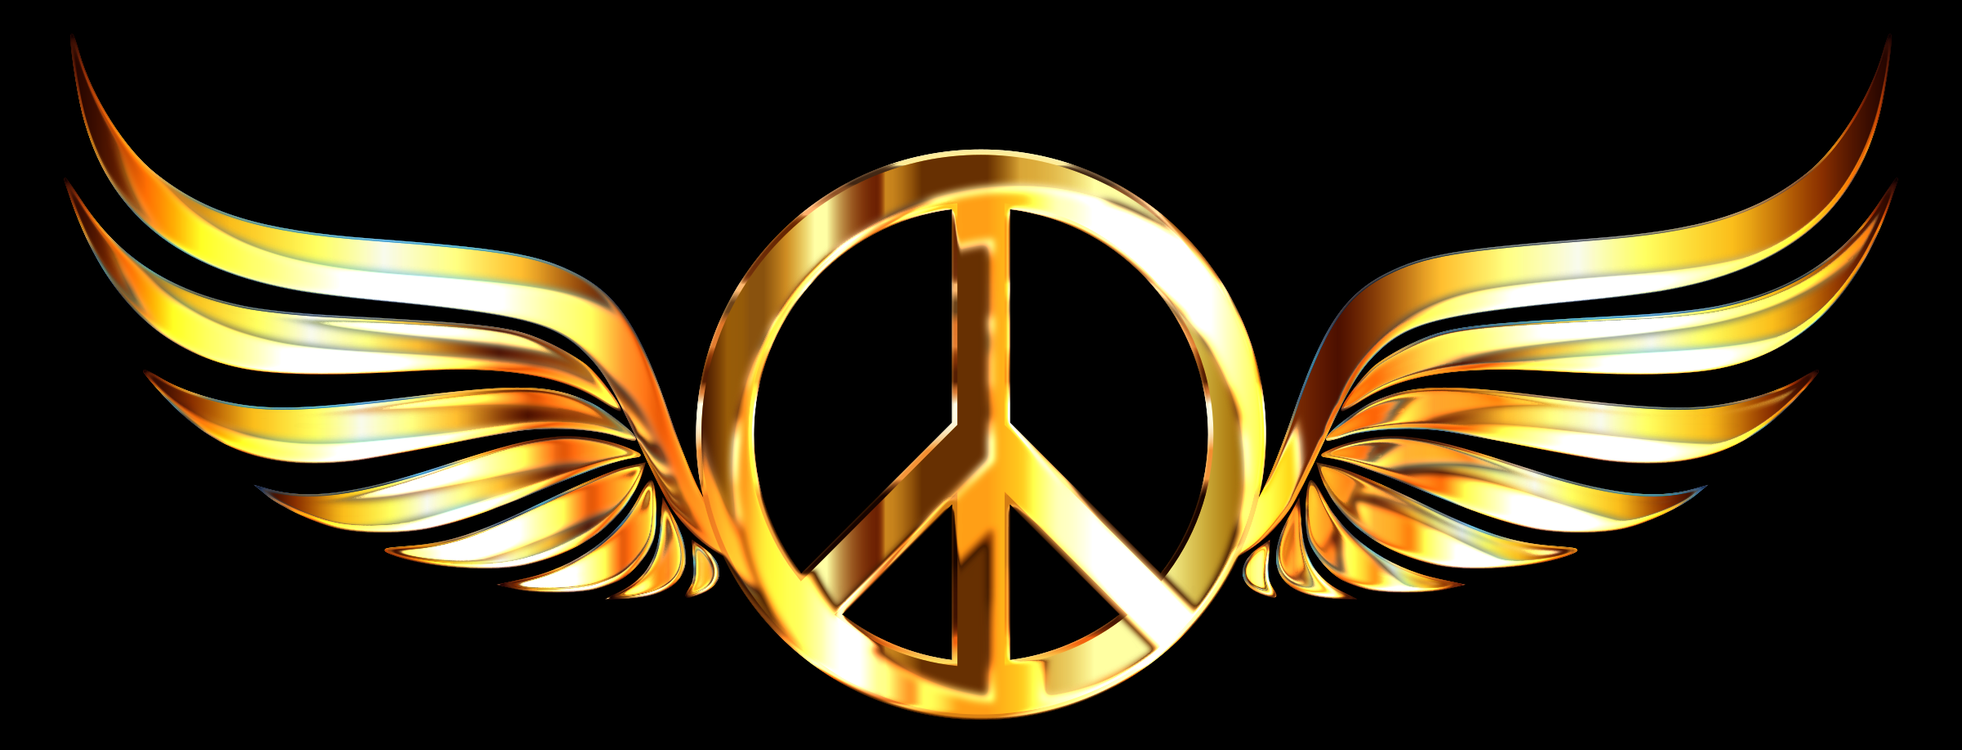 Emblem,Symmetry,Symbol